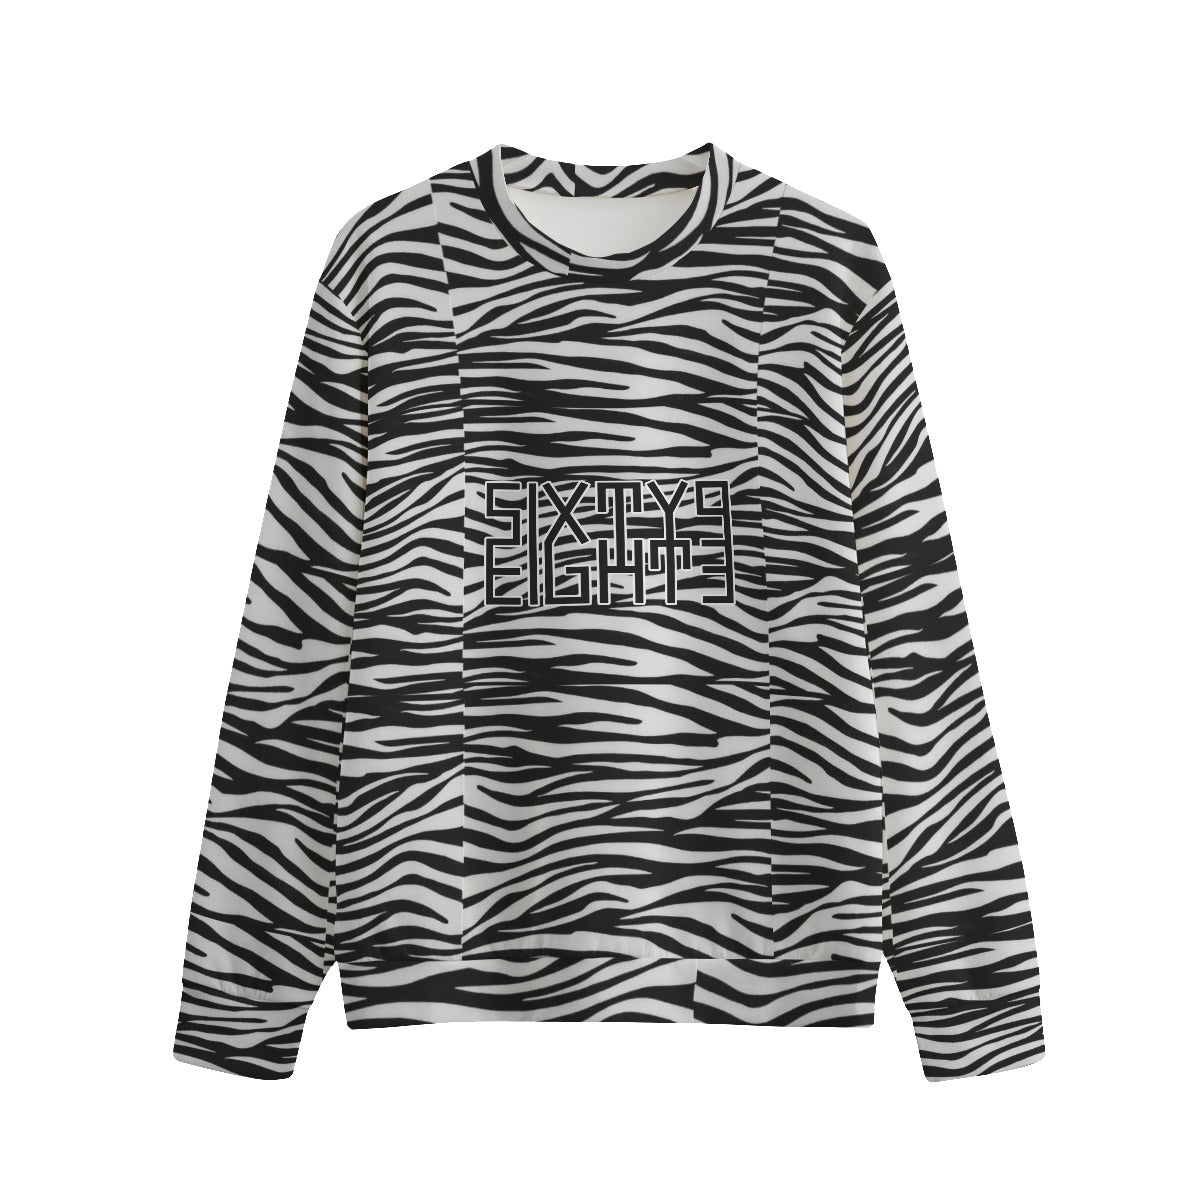 Sixty Eight 93 Logo Black & White OG Zebra Unisex O-Neck Sweatshirt